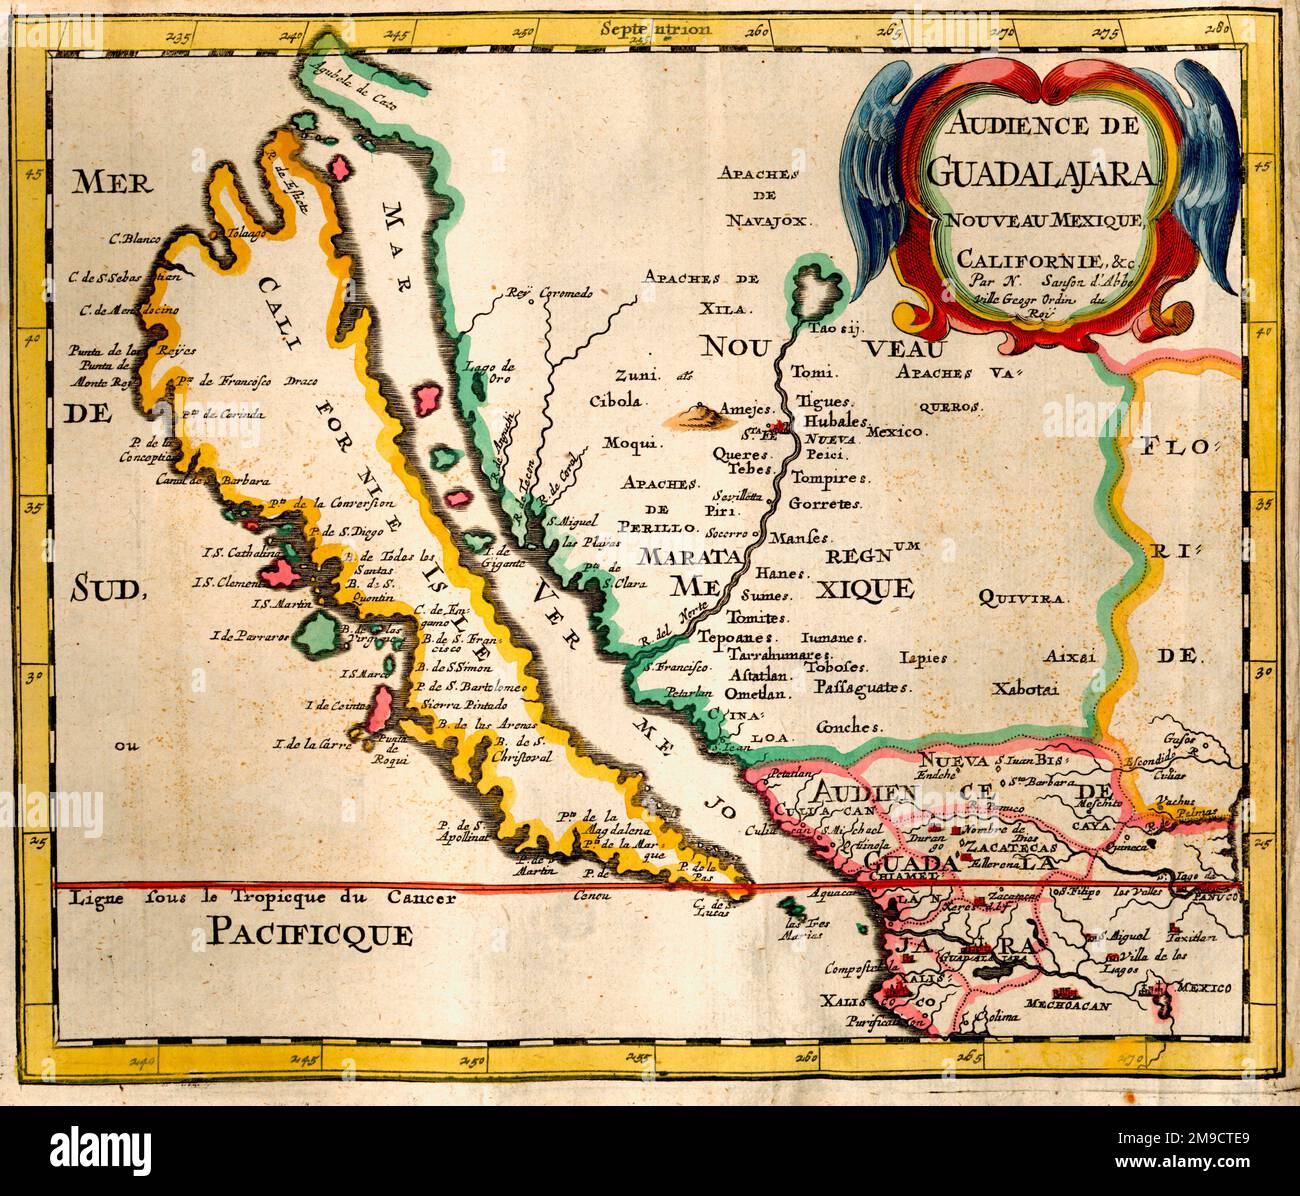 Audience de Guadalajara Nouveau Mexique, Kalifornien - Karte aus dem 17. Jahrhundert von New Mexico und Kalifornien, Amerika Stockfoto